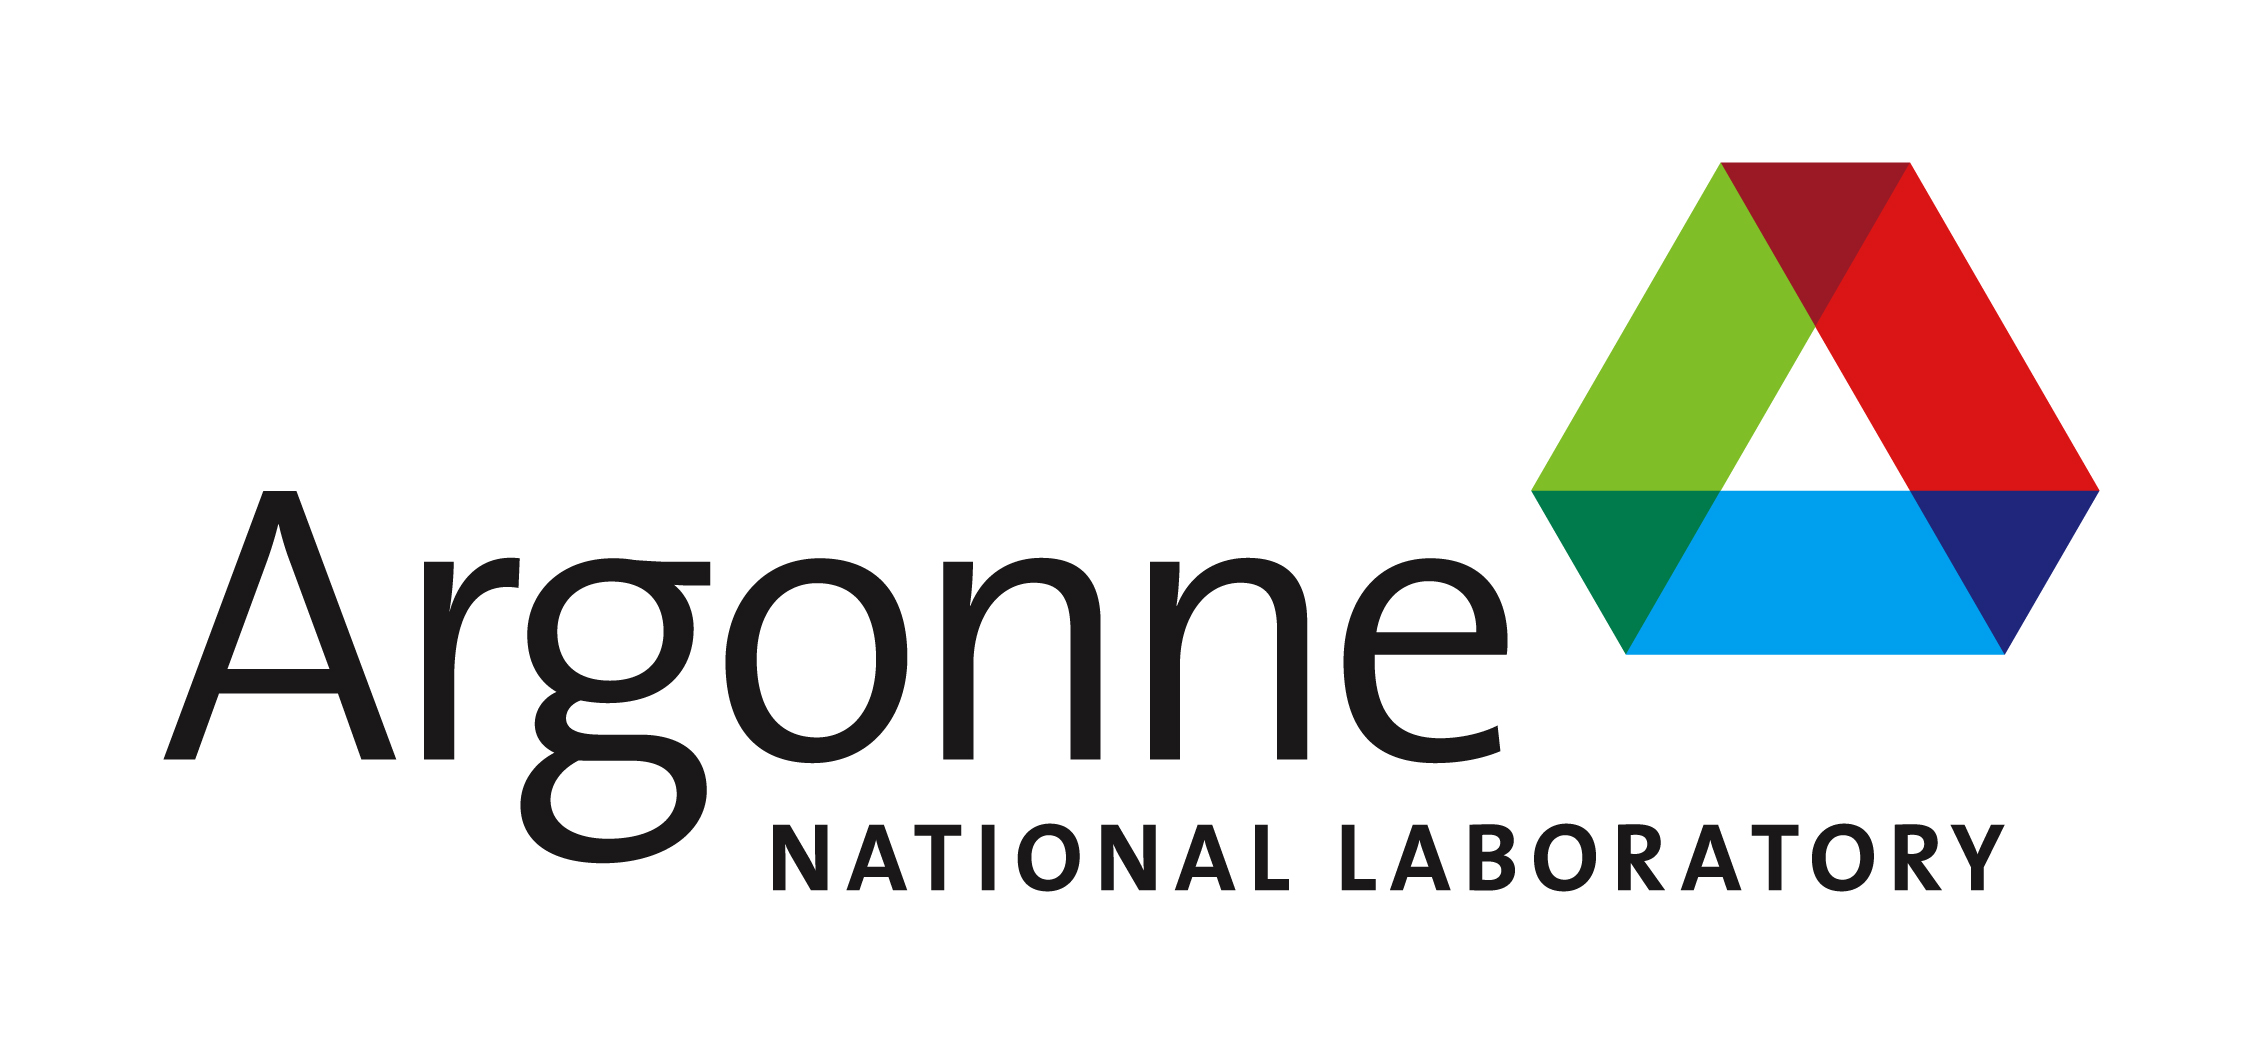 ΠΡΟΦΙΛ ΕΡΓΟΥ: Argonne National Laboratory (2015) | Τμήμα Ενέργειας